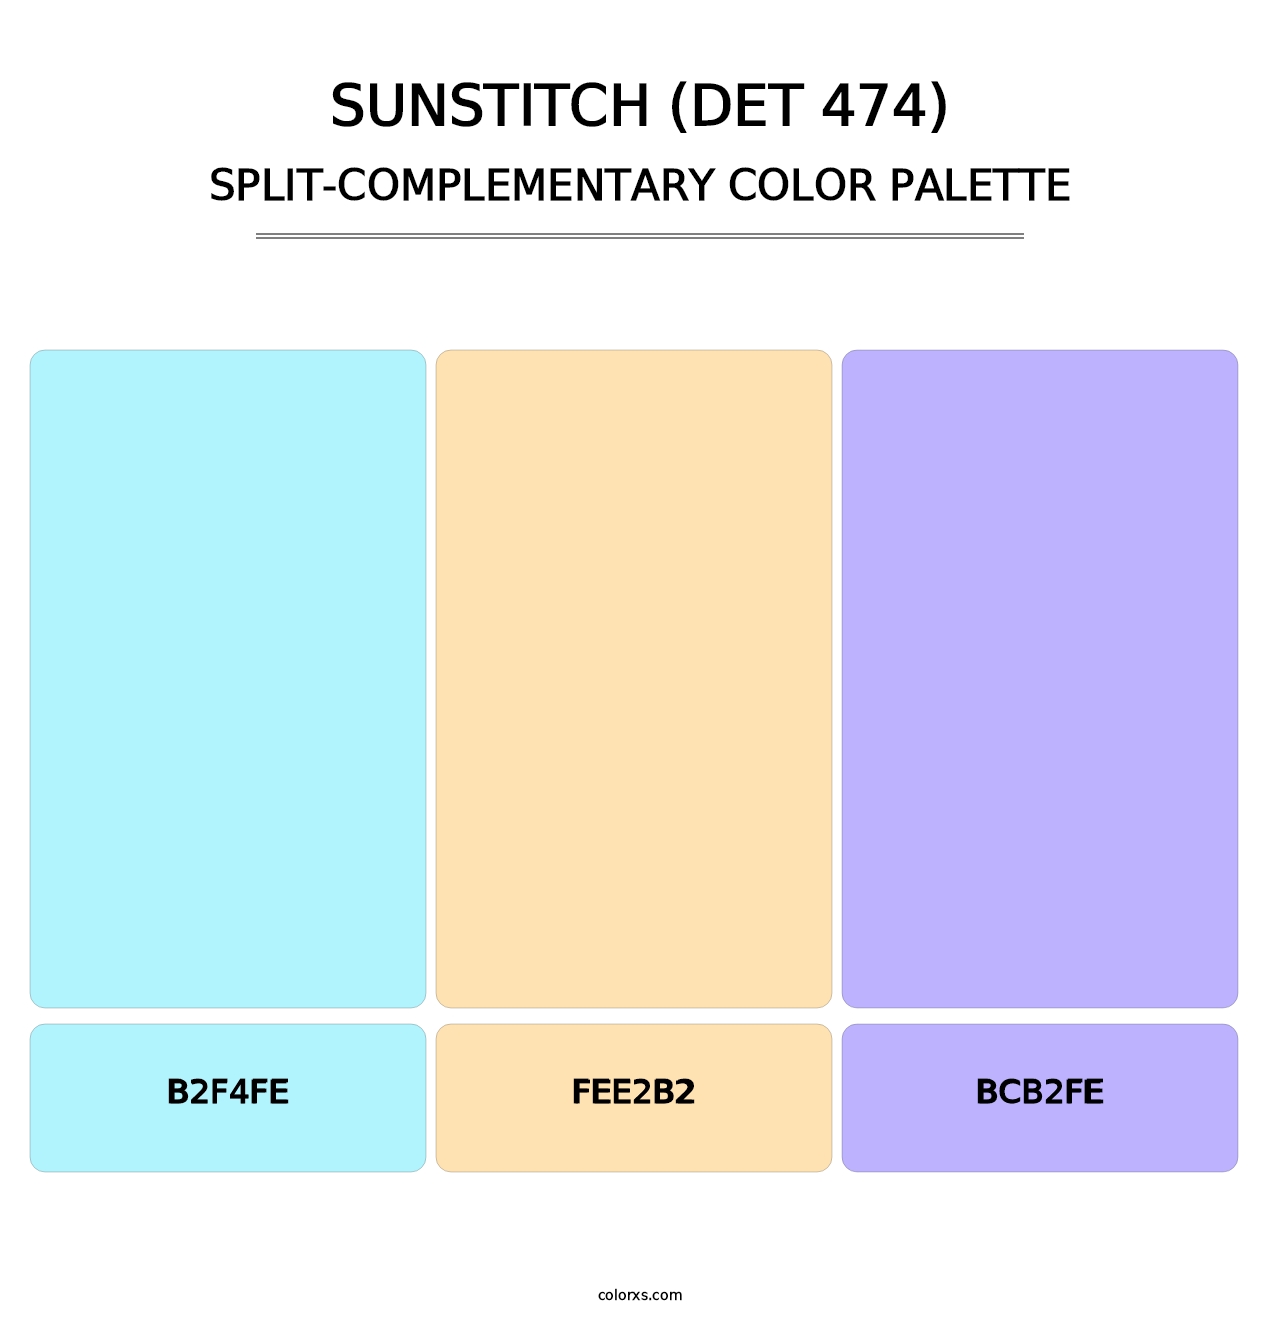 Sunstitch (DET 474) - Split-Complementary Color Palette